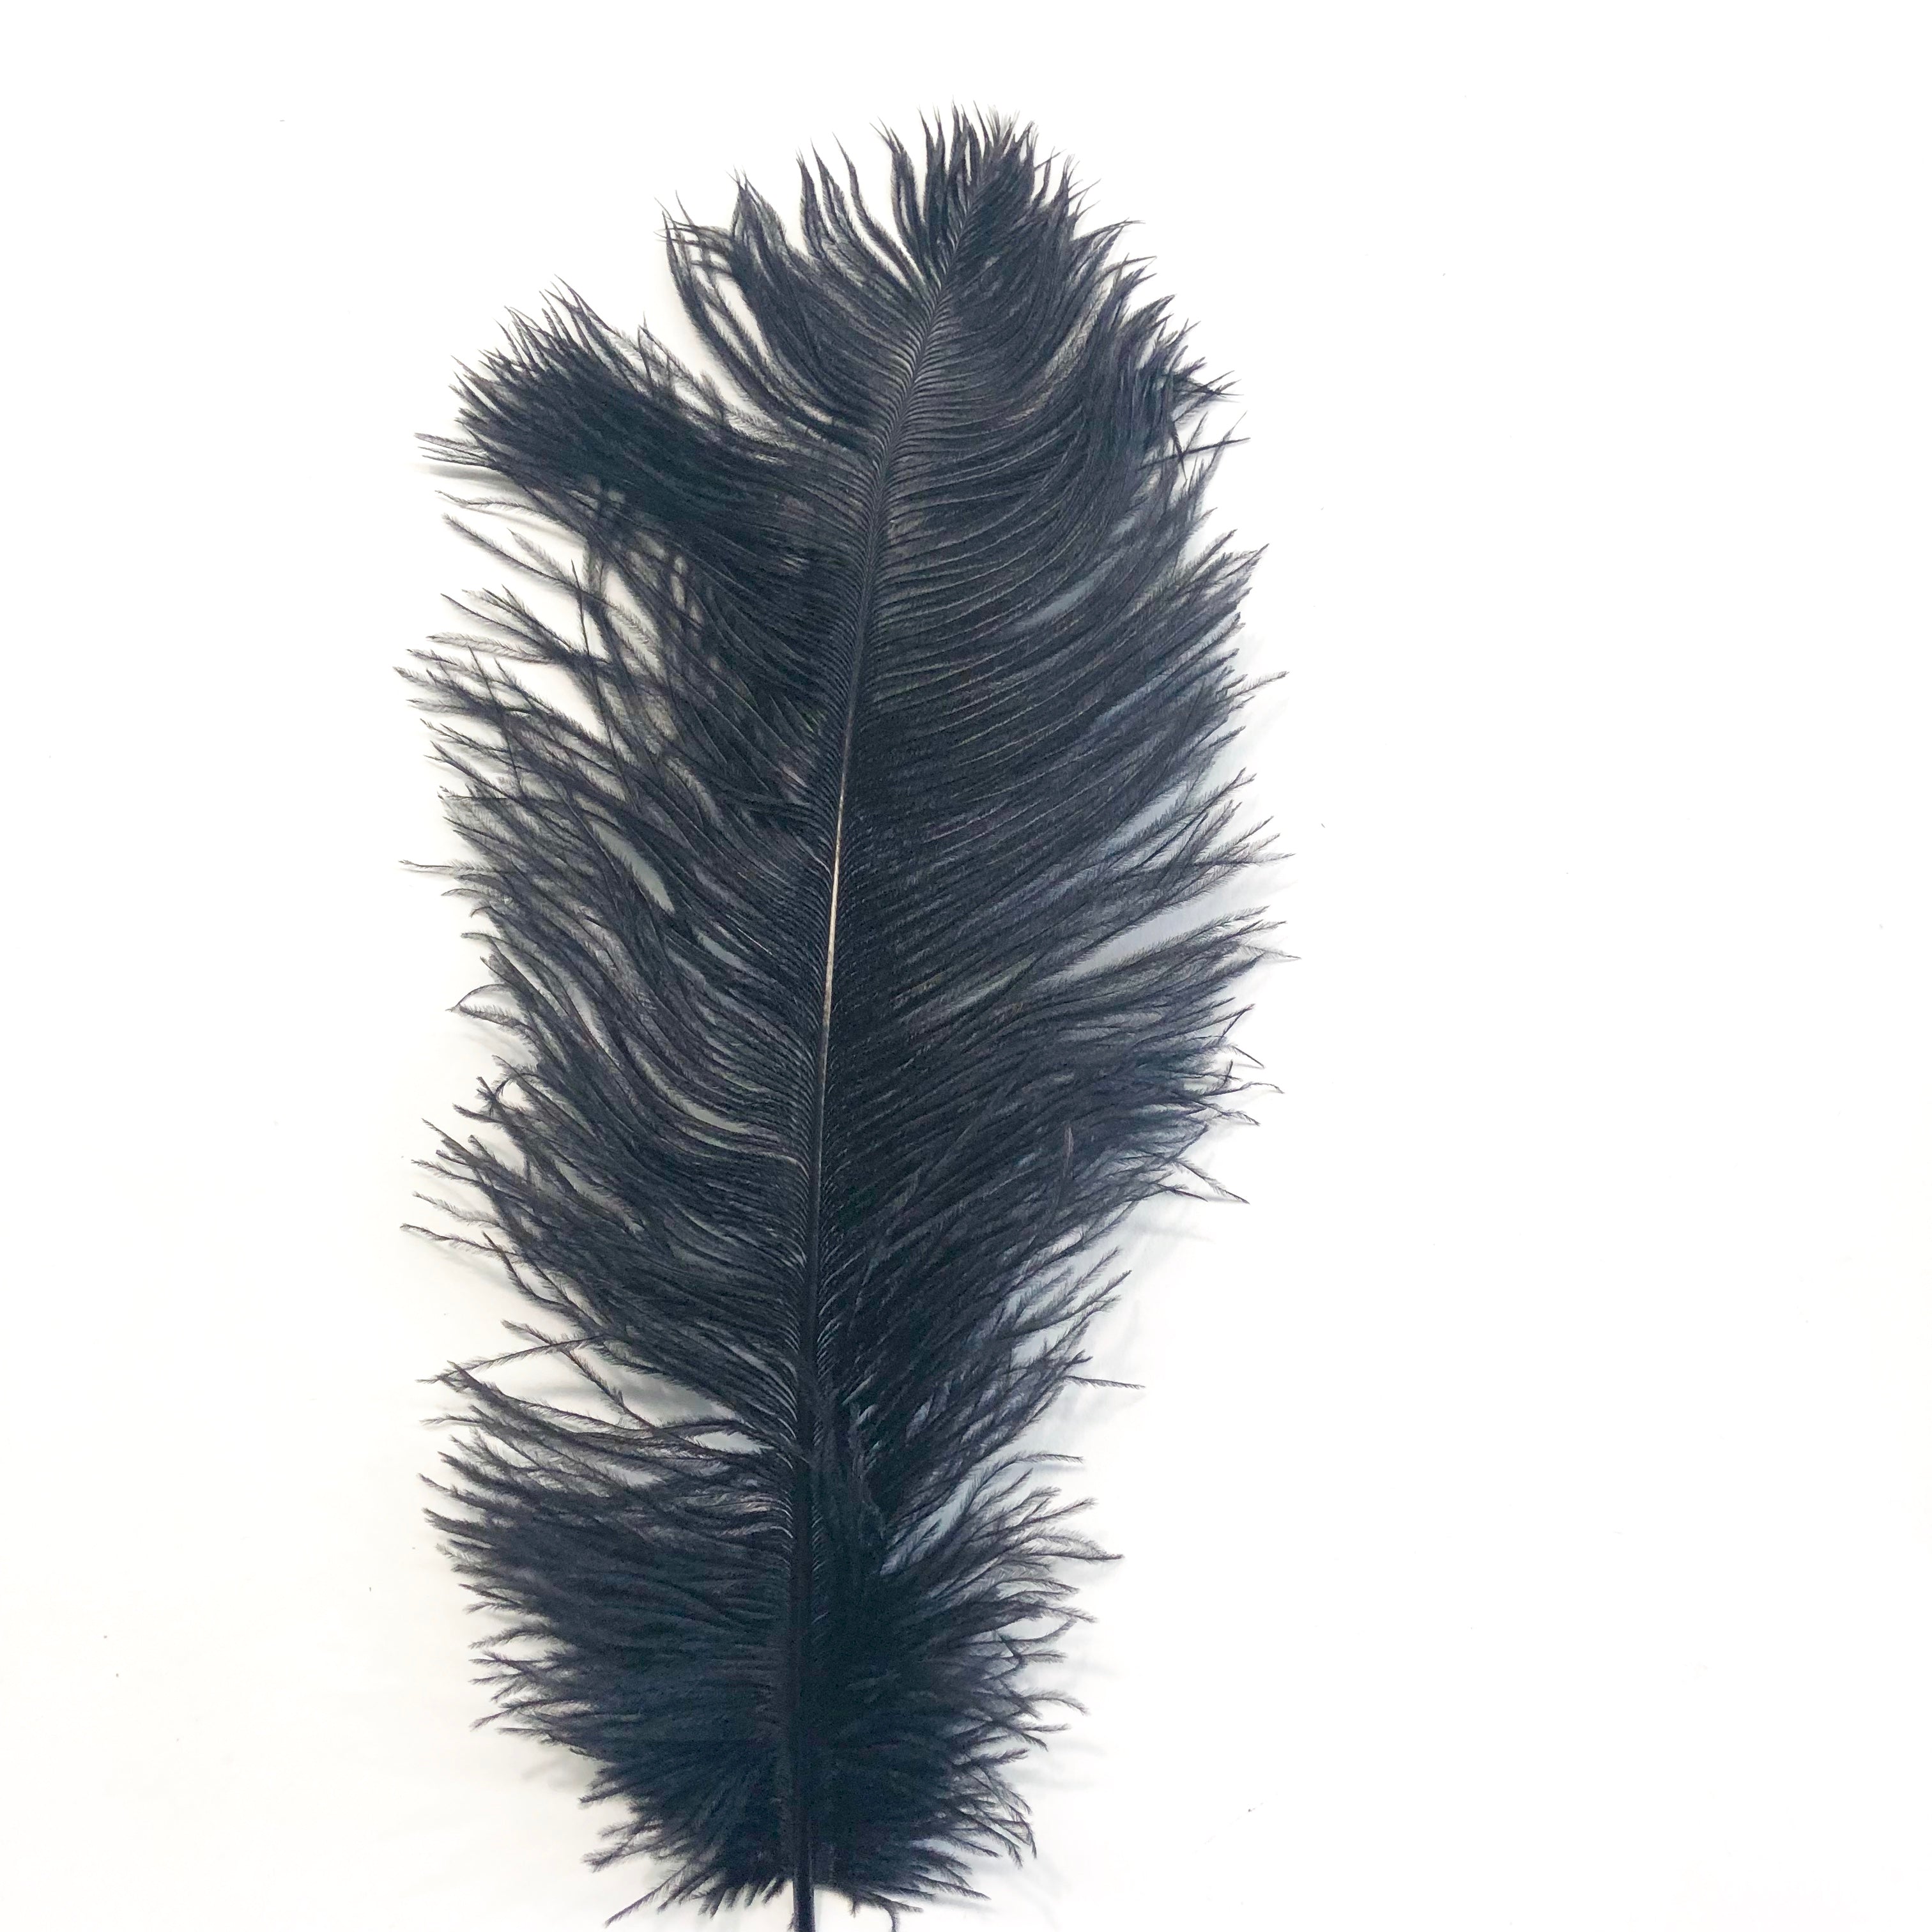 Ostrich Feather Drab 37-42cm x 5 pcs - Black ((SECONDS))